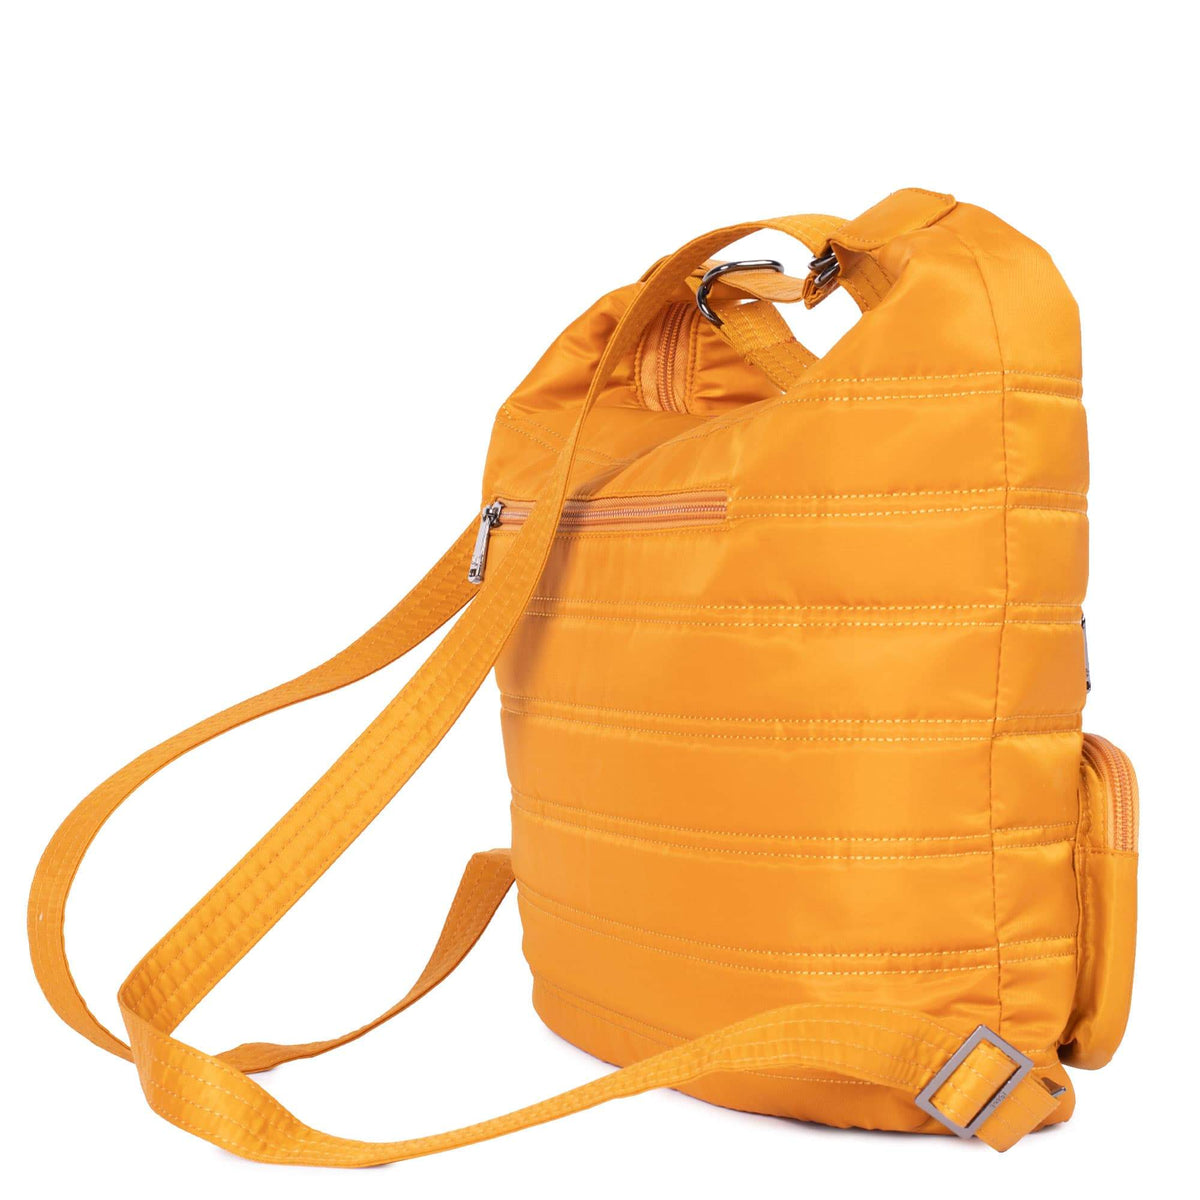 Zipliner Convertible Hobo Bag